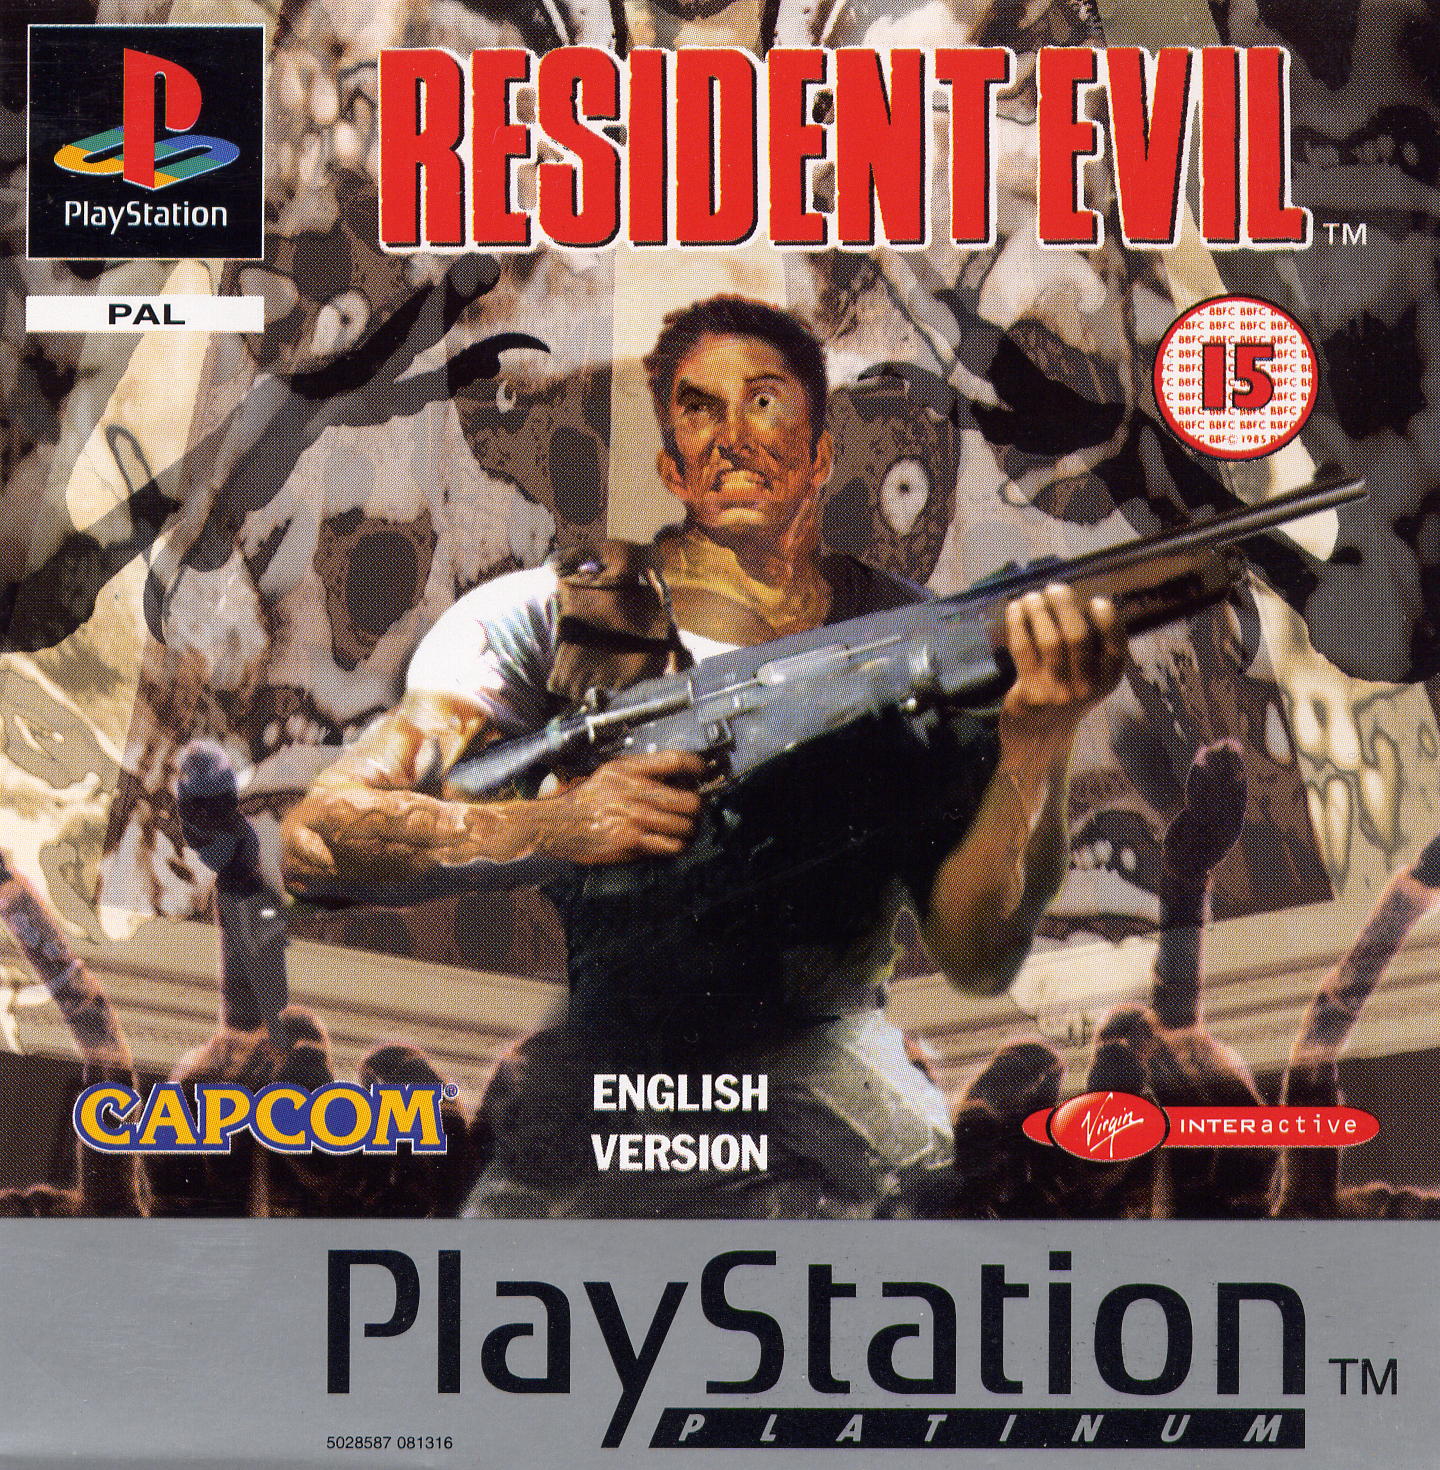 Resident Evil 4: Recomeço – filme vale apenas pelos efeitos 3D